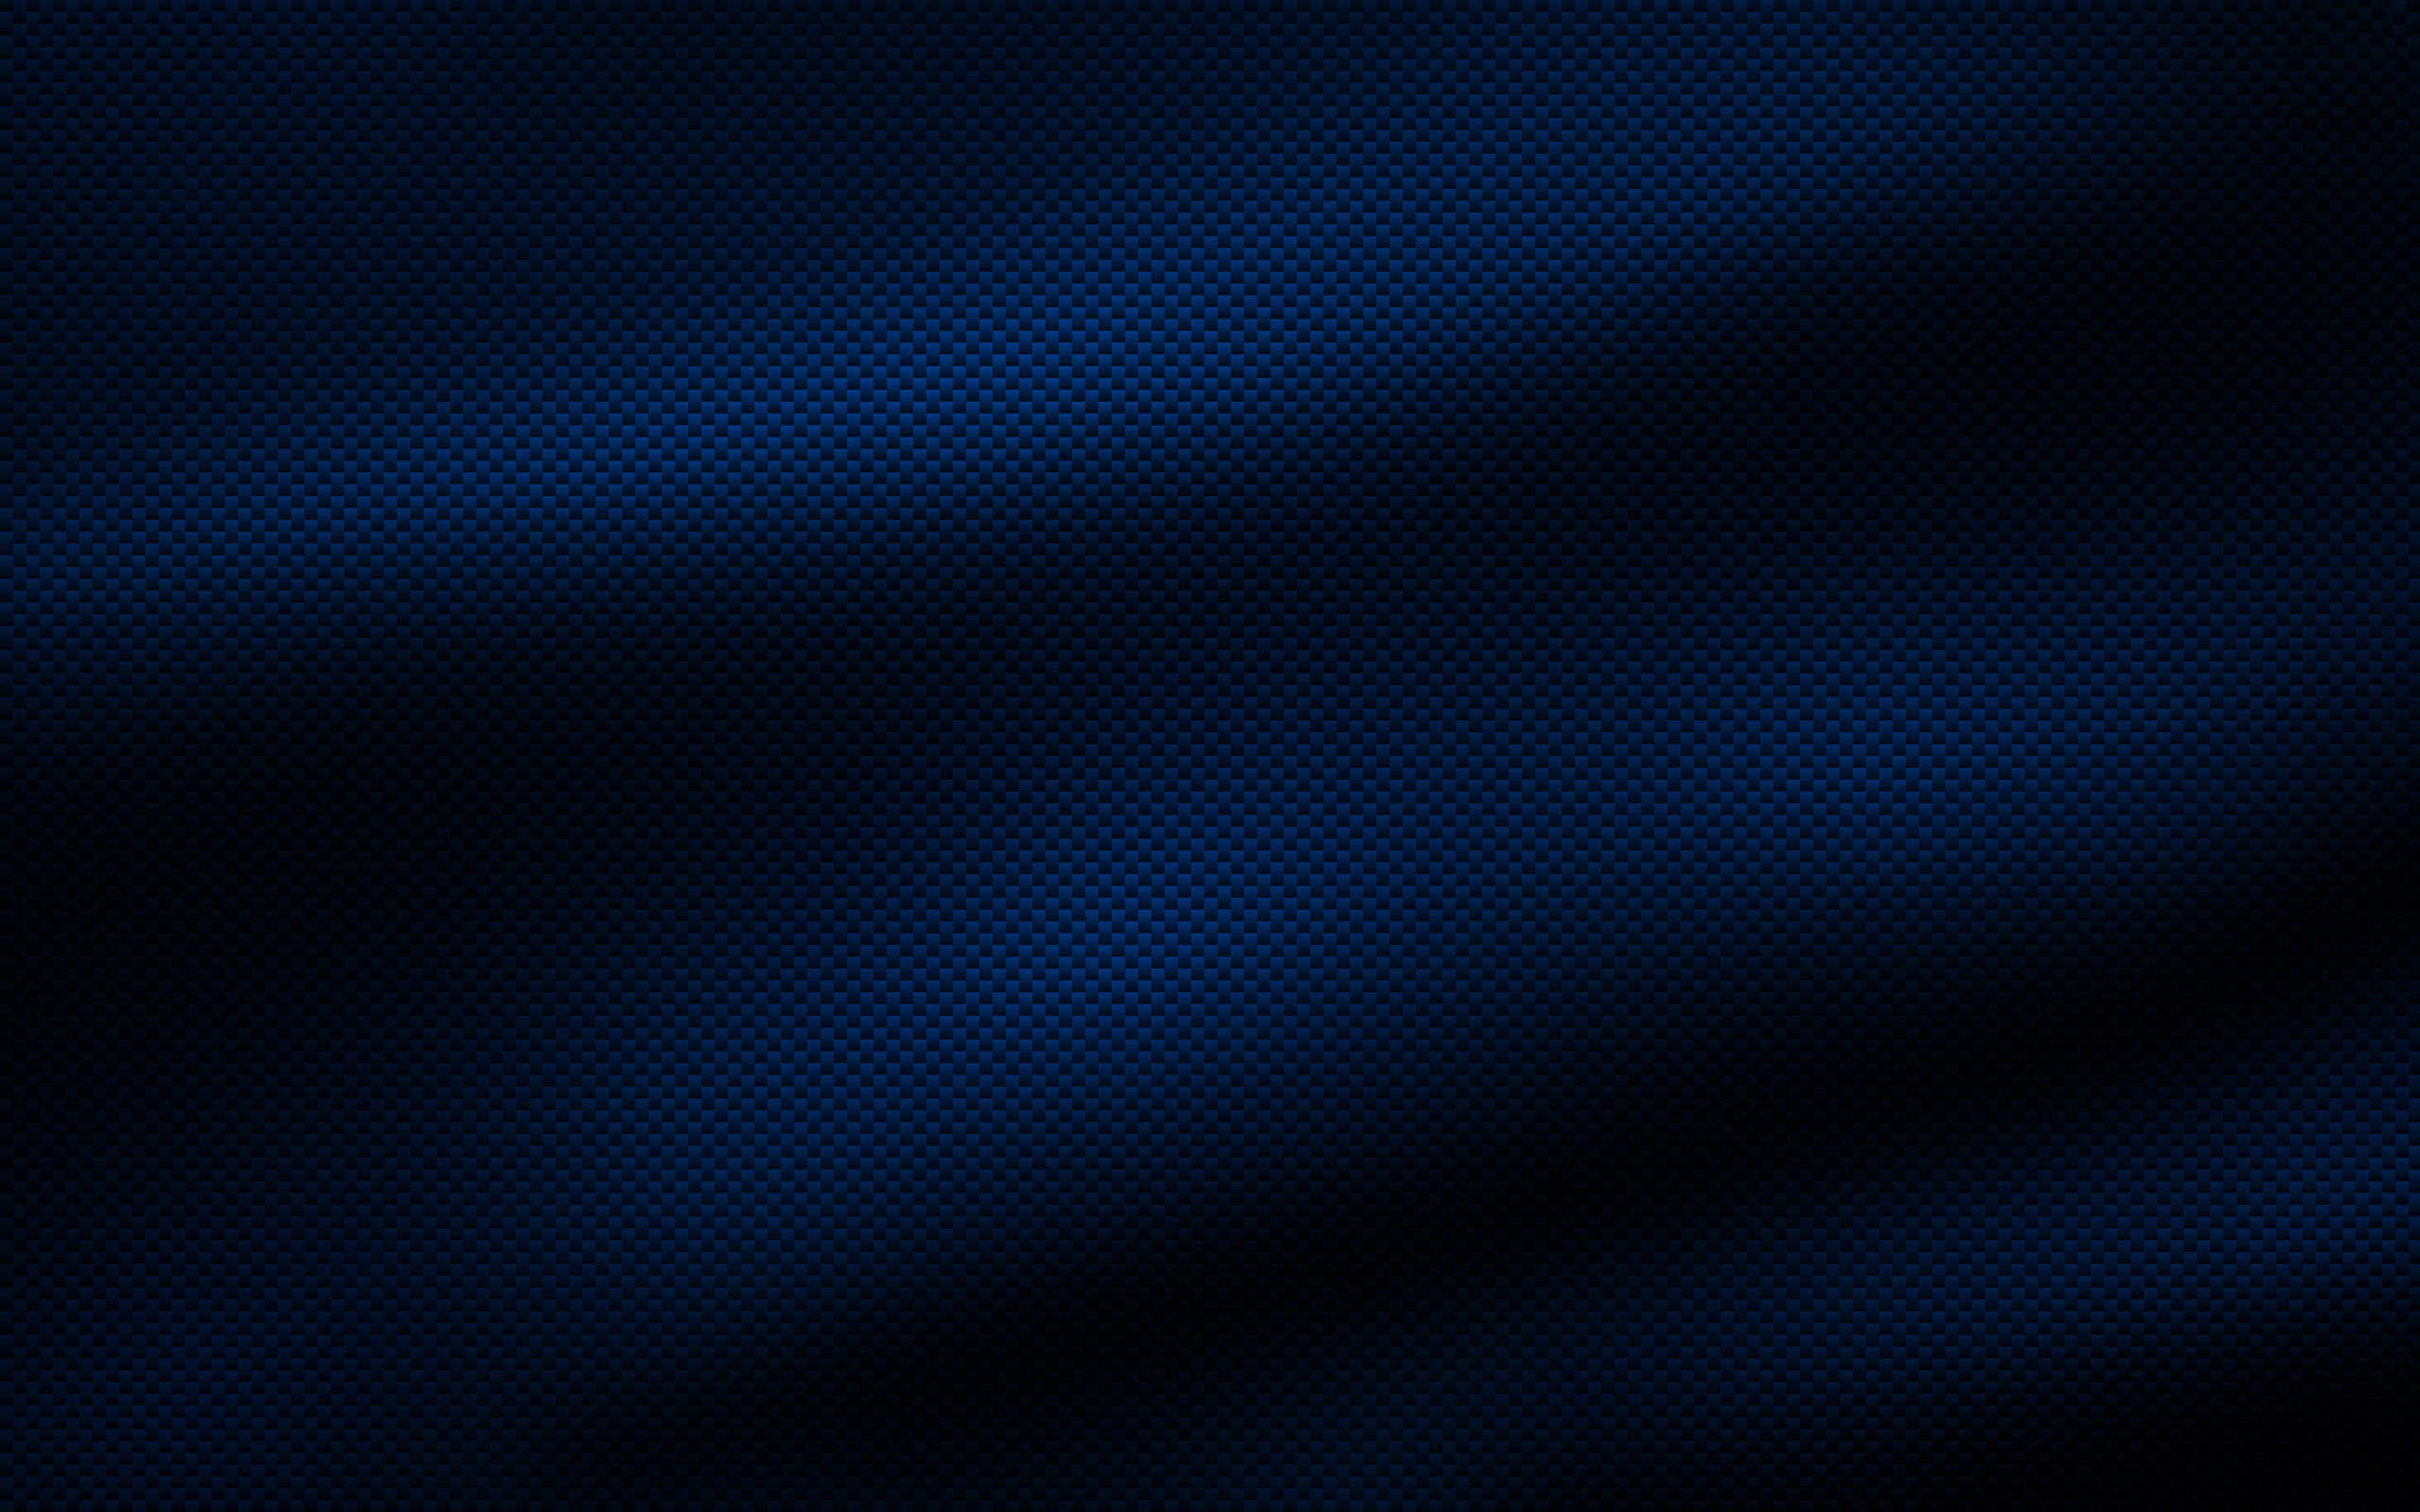 Blue Carbon Fiber Wallpaper 2560x1600